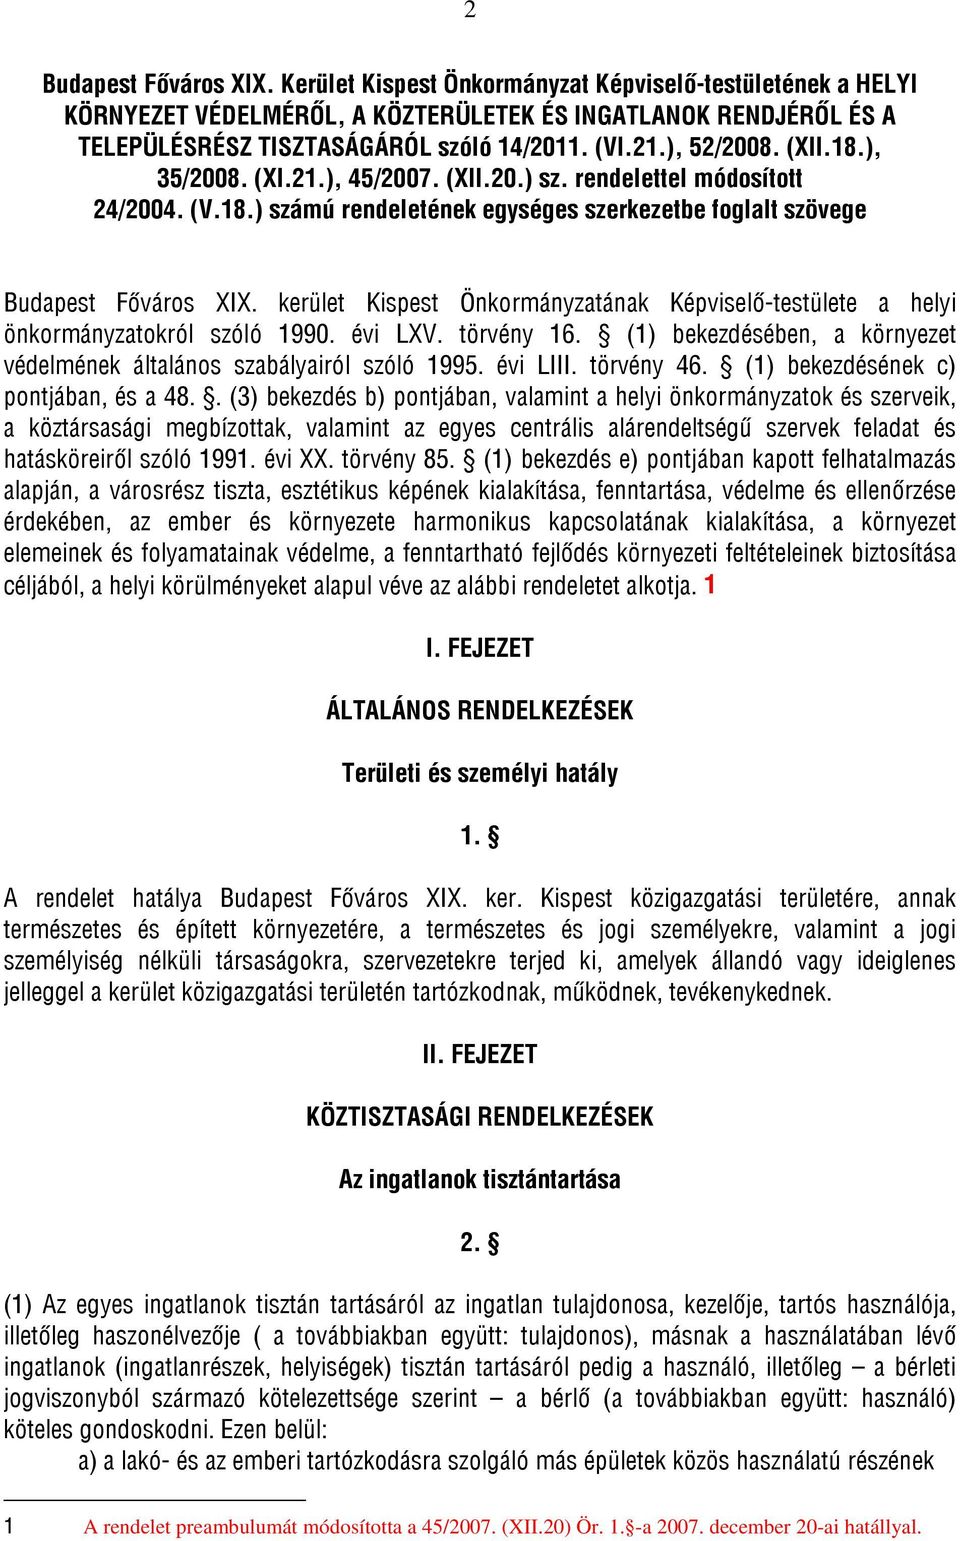 kerület Kispest Önkormányzatának Képviselő-testülete a helyi önkormányzatokról szóló 1990. évi LXV. törvény 16. (1) bekezdésében, a környezet védelmének általános szabályairól szóló 1995. évi LIII.